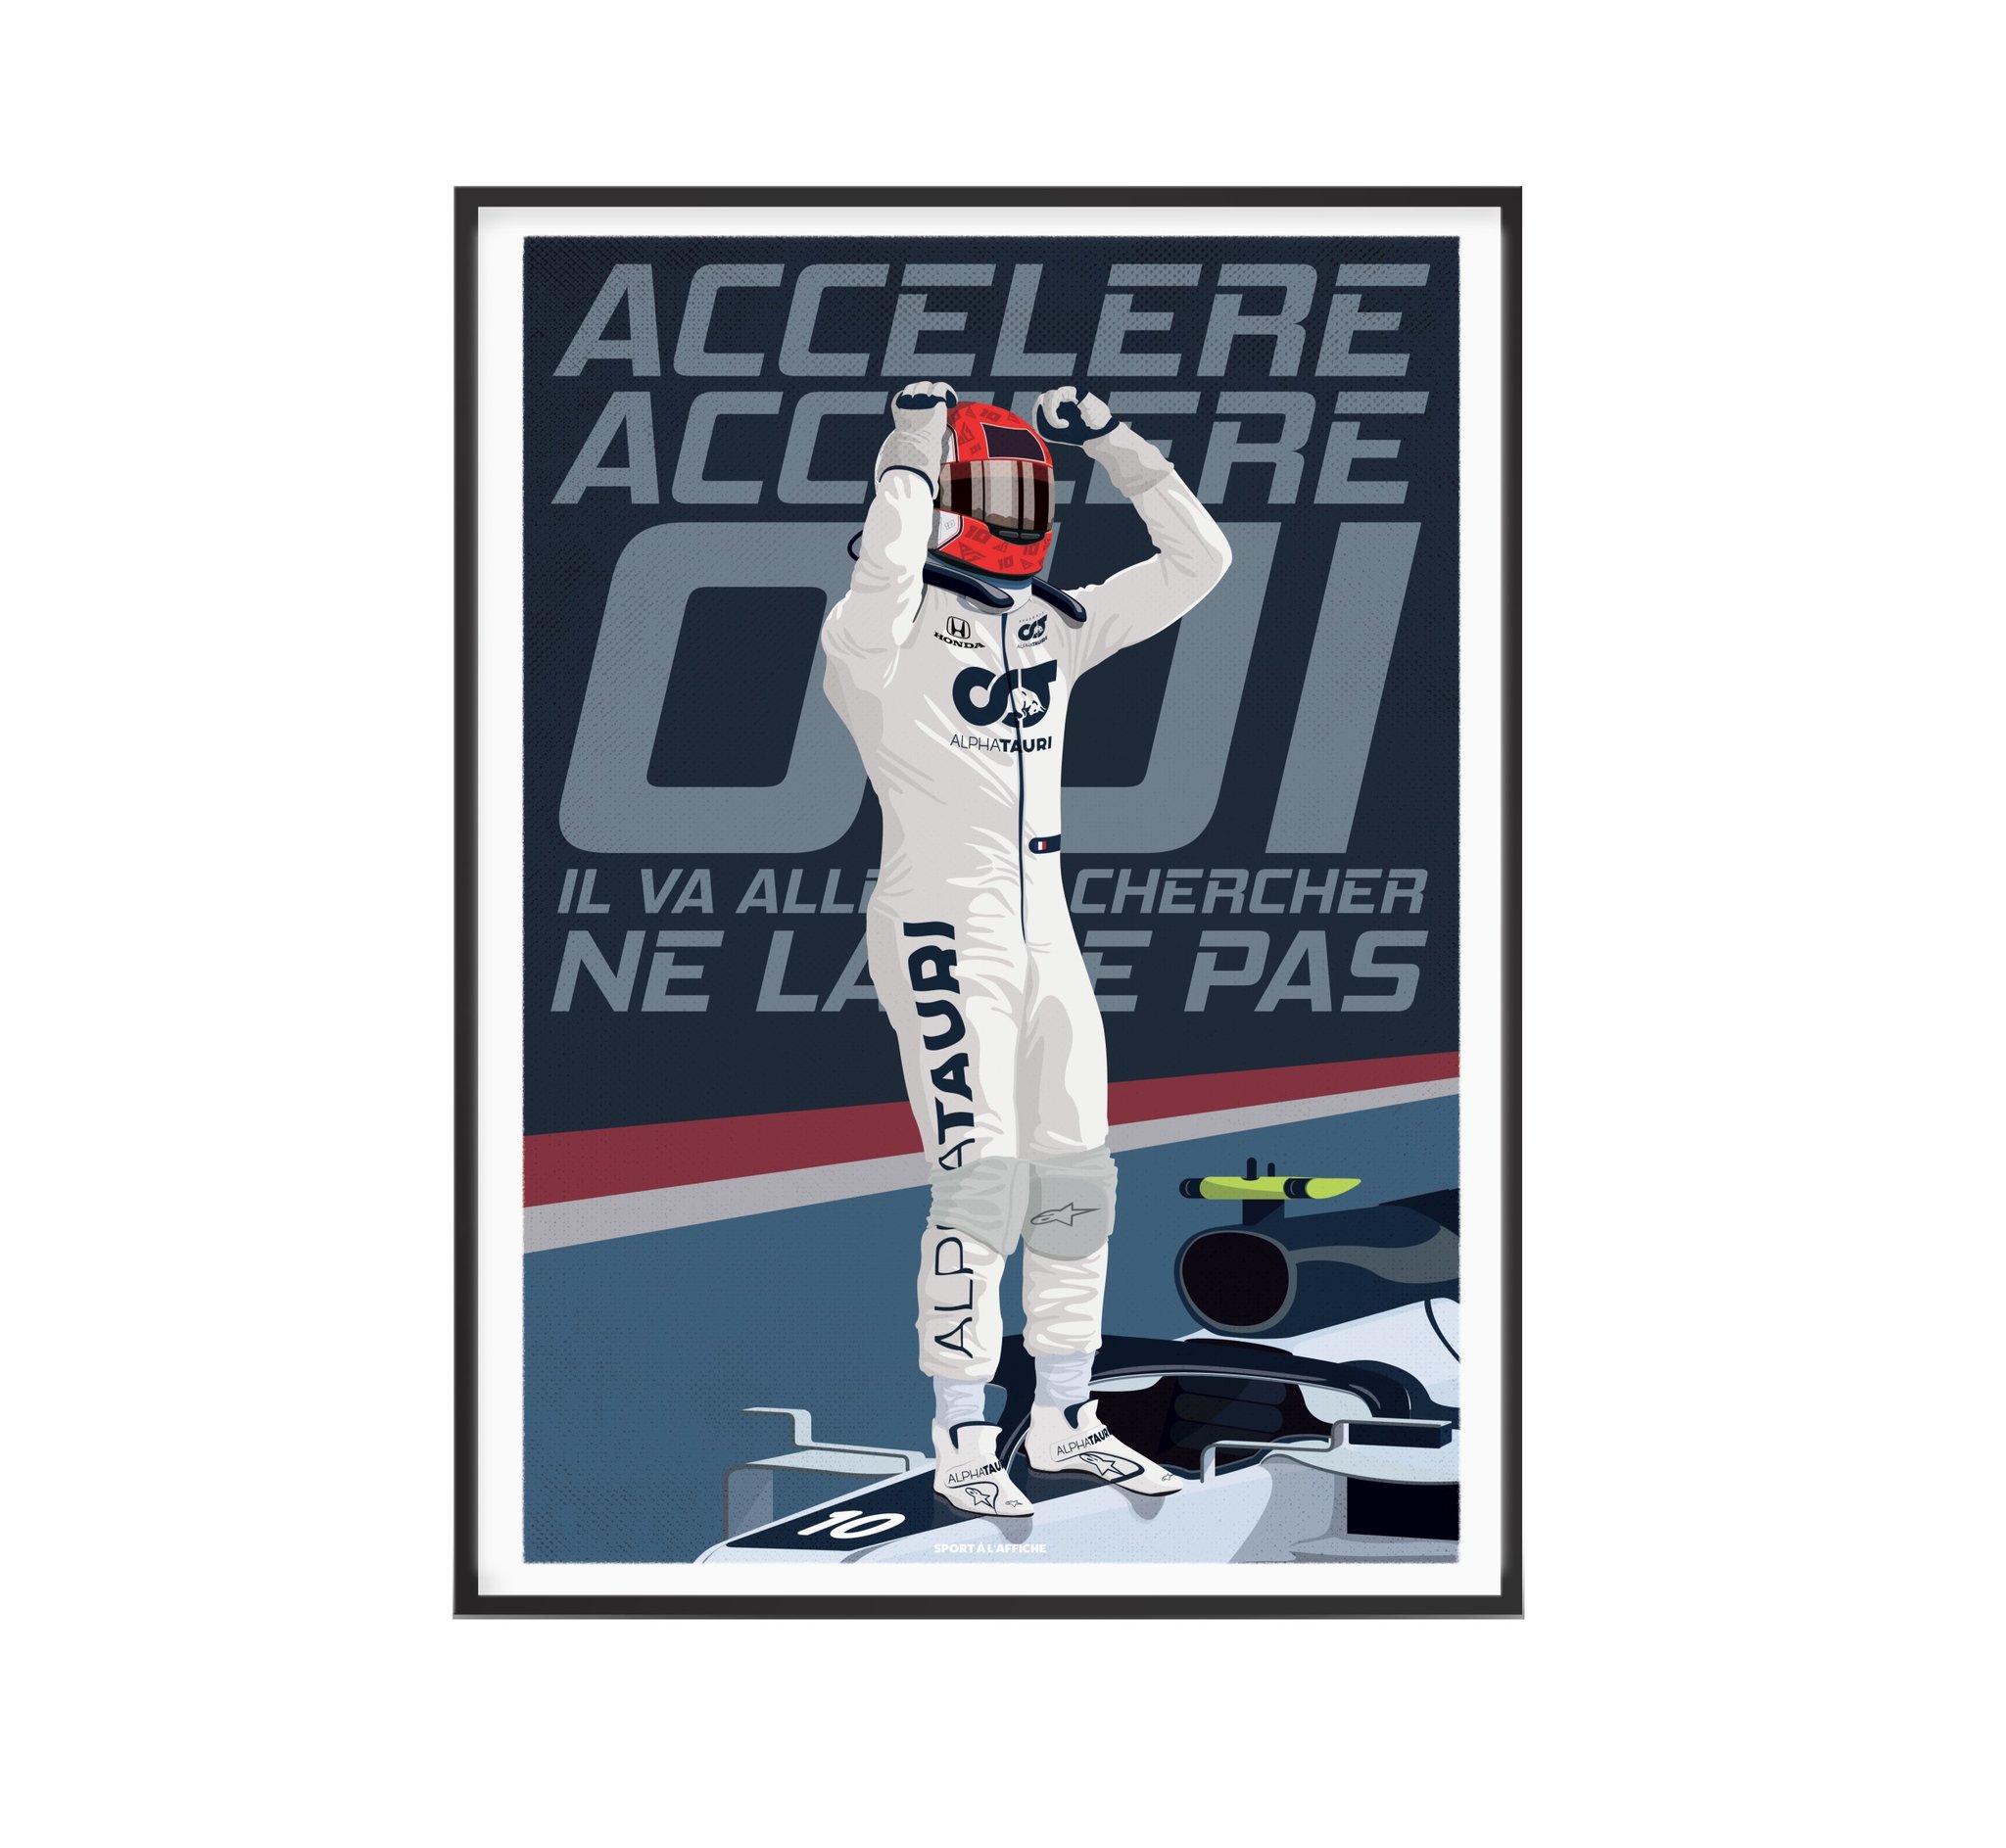 Affiche Formule 1 - Accélère Accélère Pierre - 30 x 40 cm